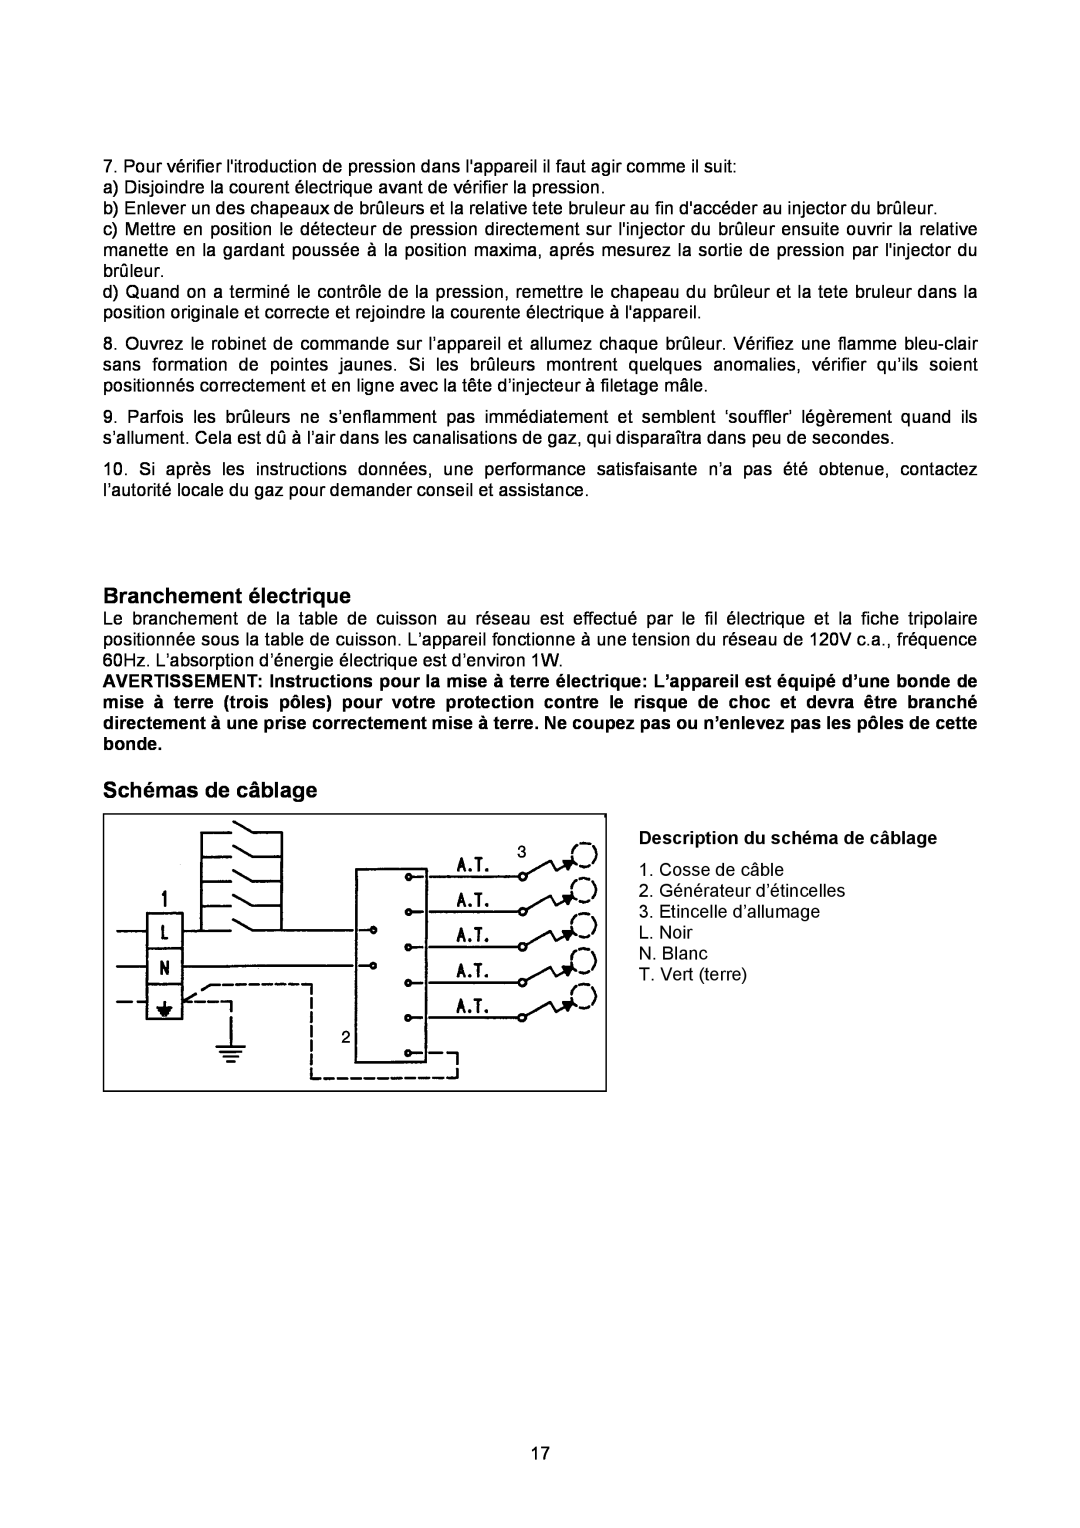 Bertazzoni P34 5 00 X dimensions Branchement électrique, Schémas de câblage, Description du schéma de câblage 